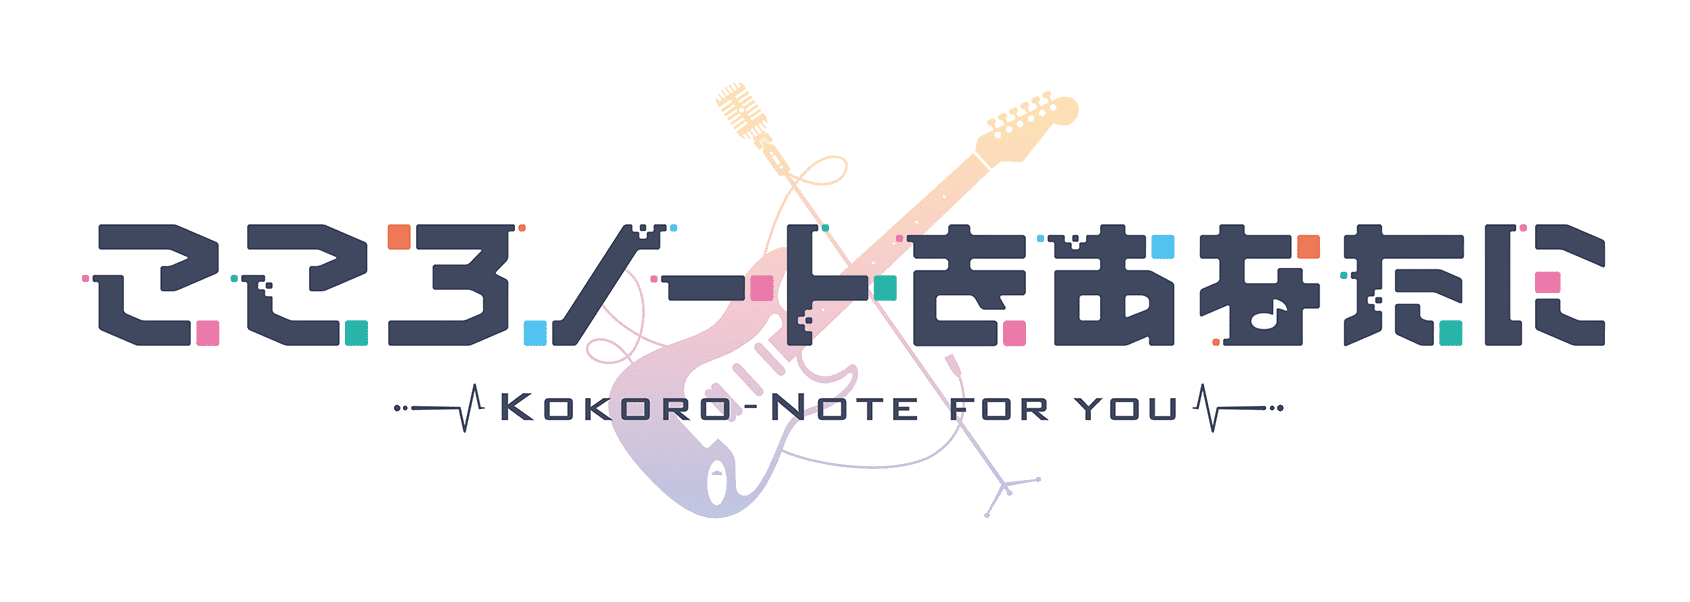 こころノートをあなたに -Kokoro Note for you-